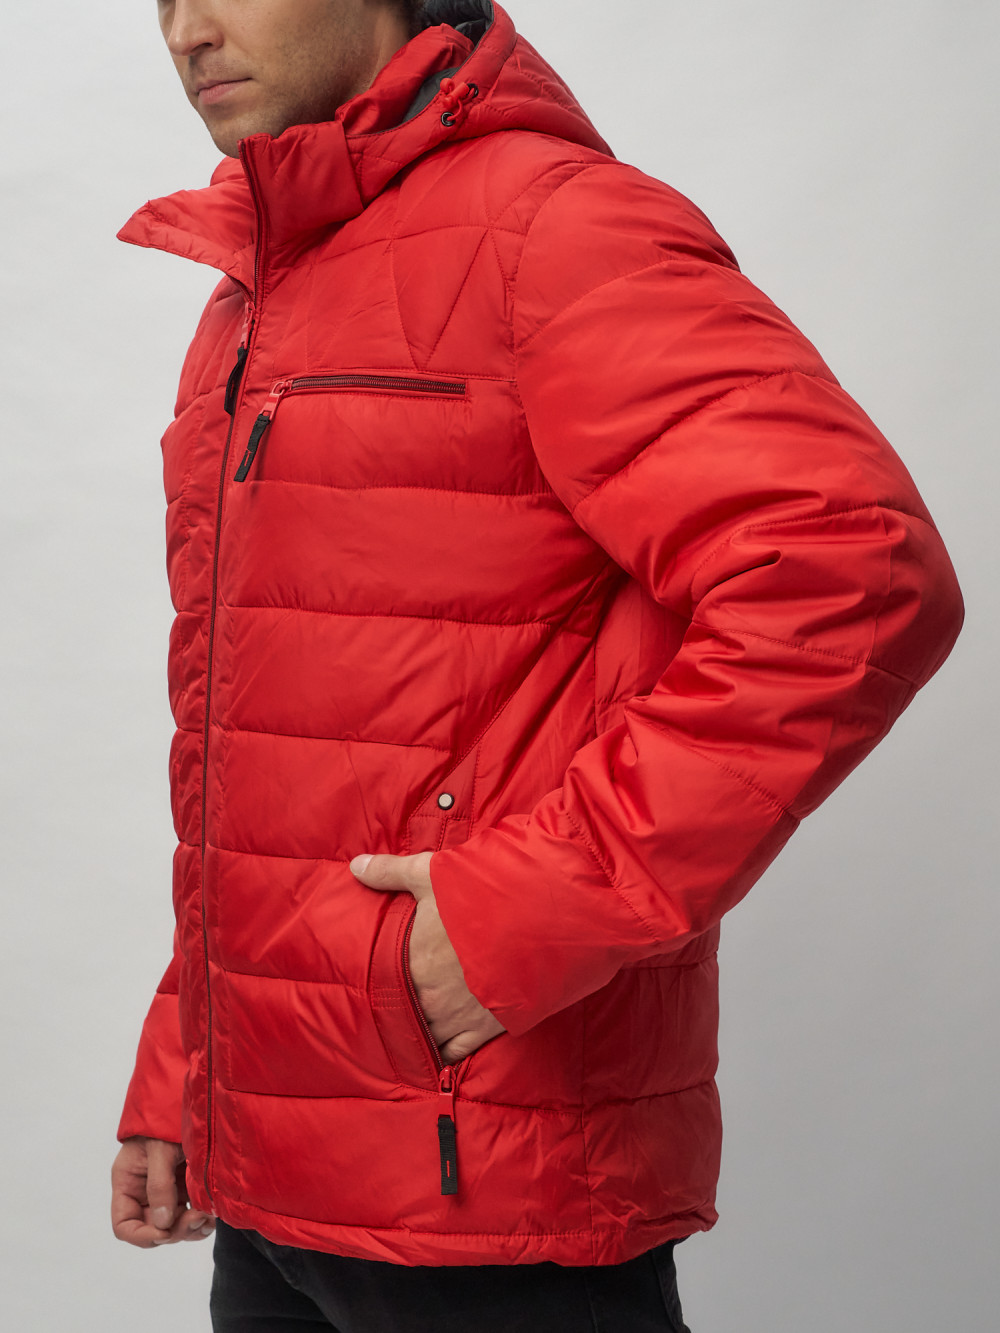 Купить куртку мужскую спортивную весеннюю оптом от производителя недорого в Москве 62187Kr 1